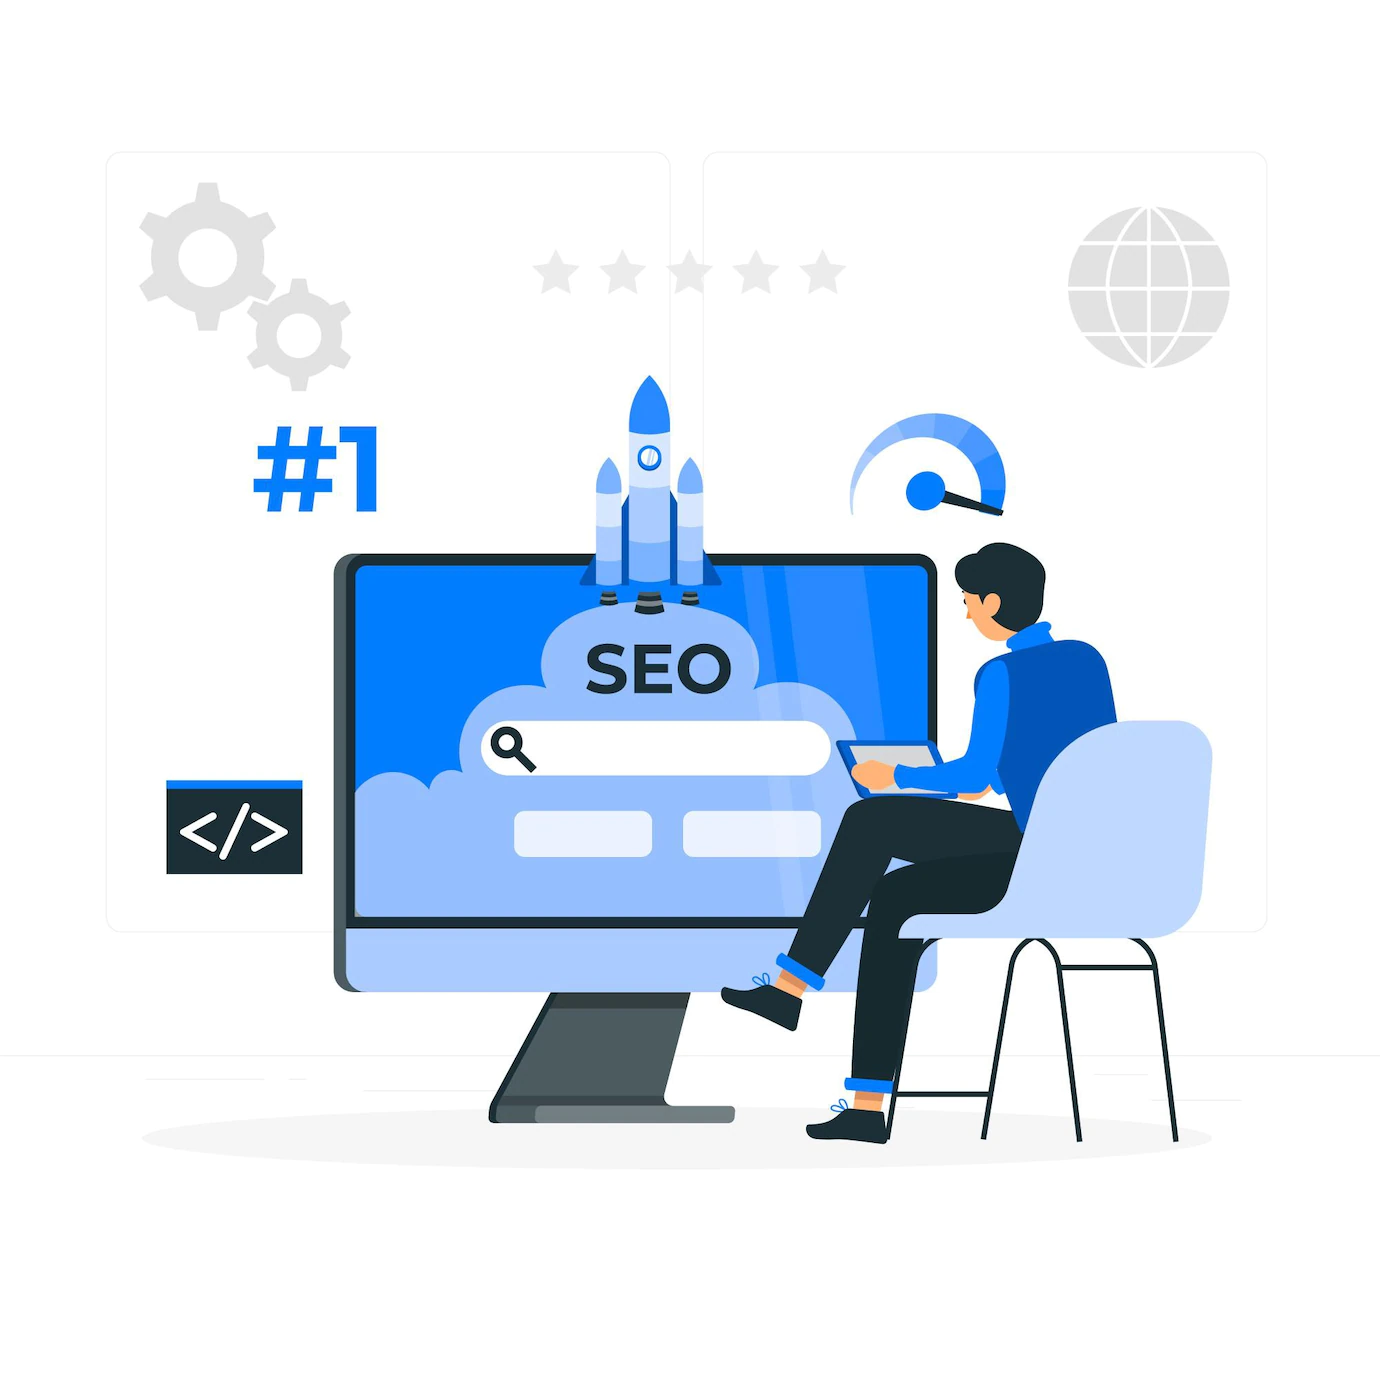 Illustration einer Person, die vor einem großen Bildschirm sitzt, auf dem eine Suchmaschine zu sehen ist. Das Bild beschreibt, dass durch eine Optimierung einer Webseite für die Suchmaschine das Ranking in der Suchmaschine steigt.